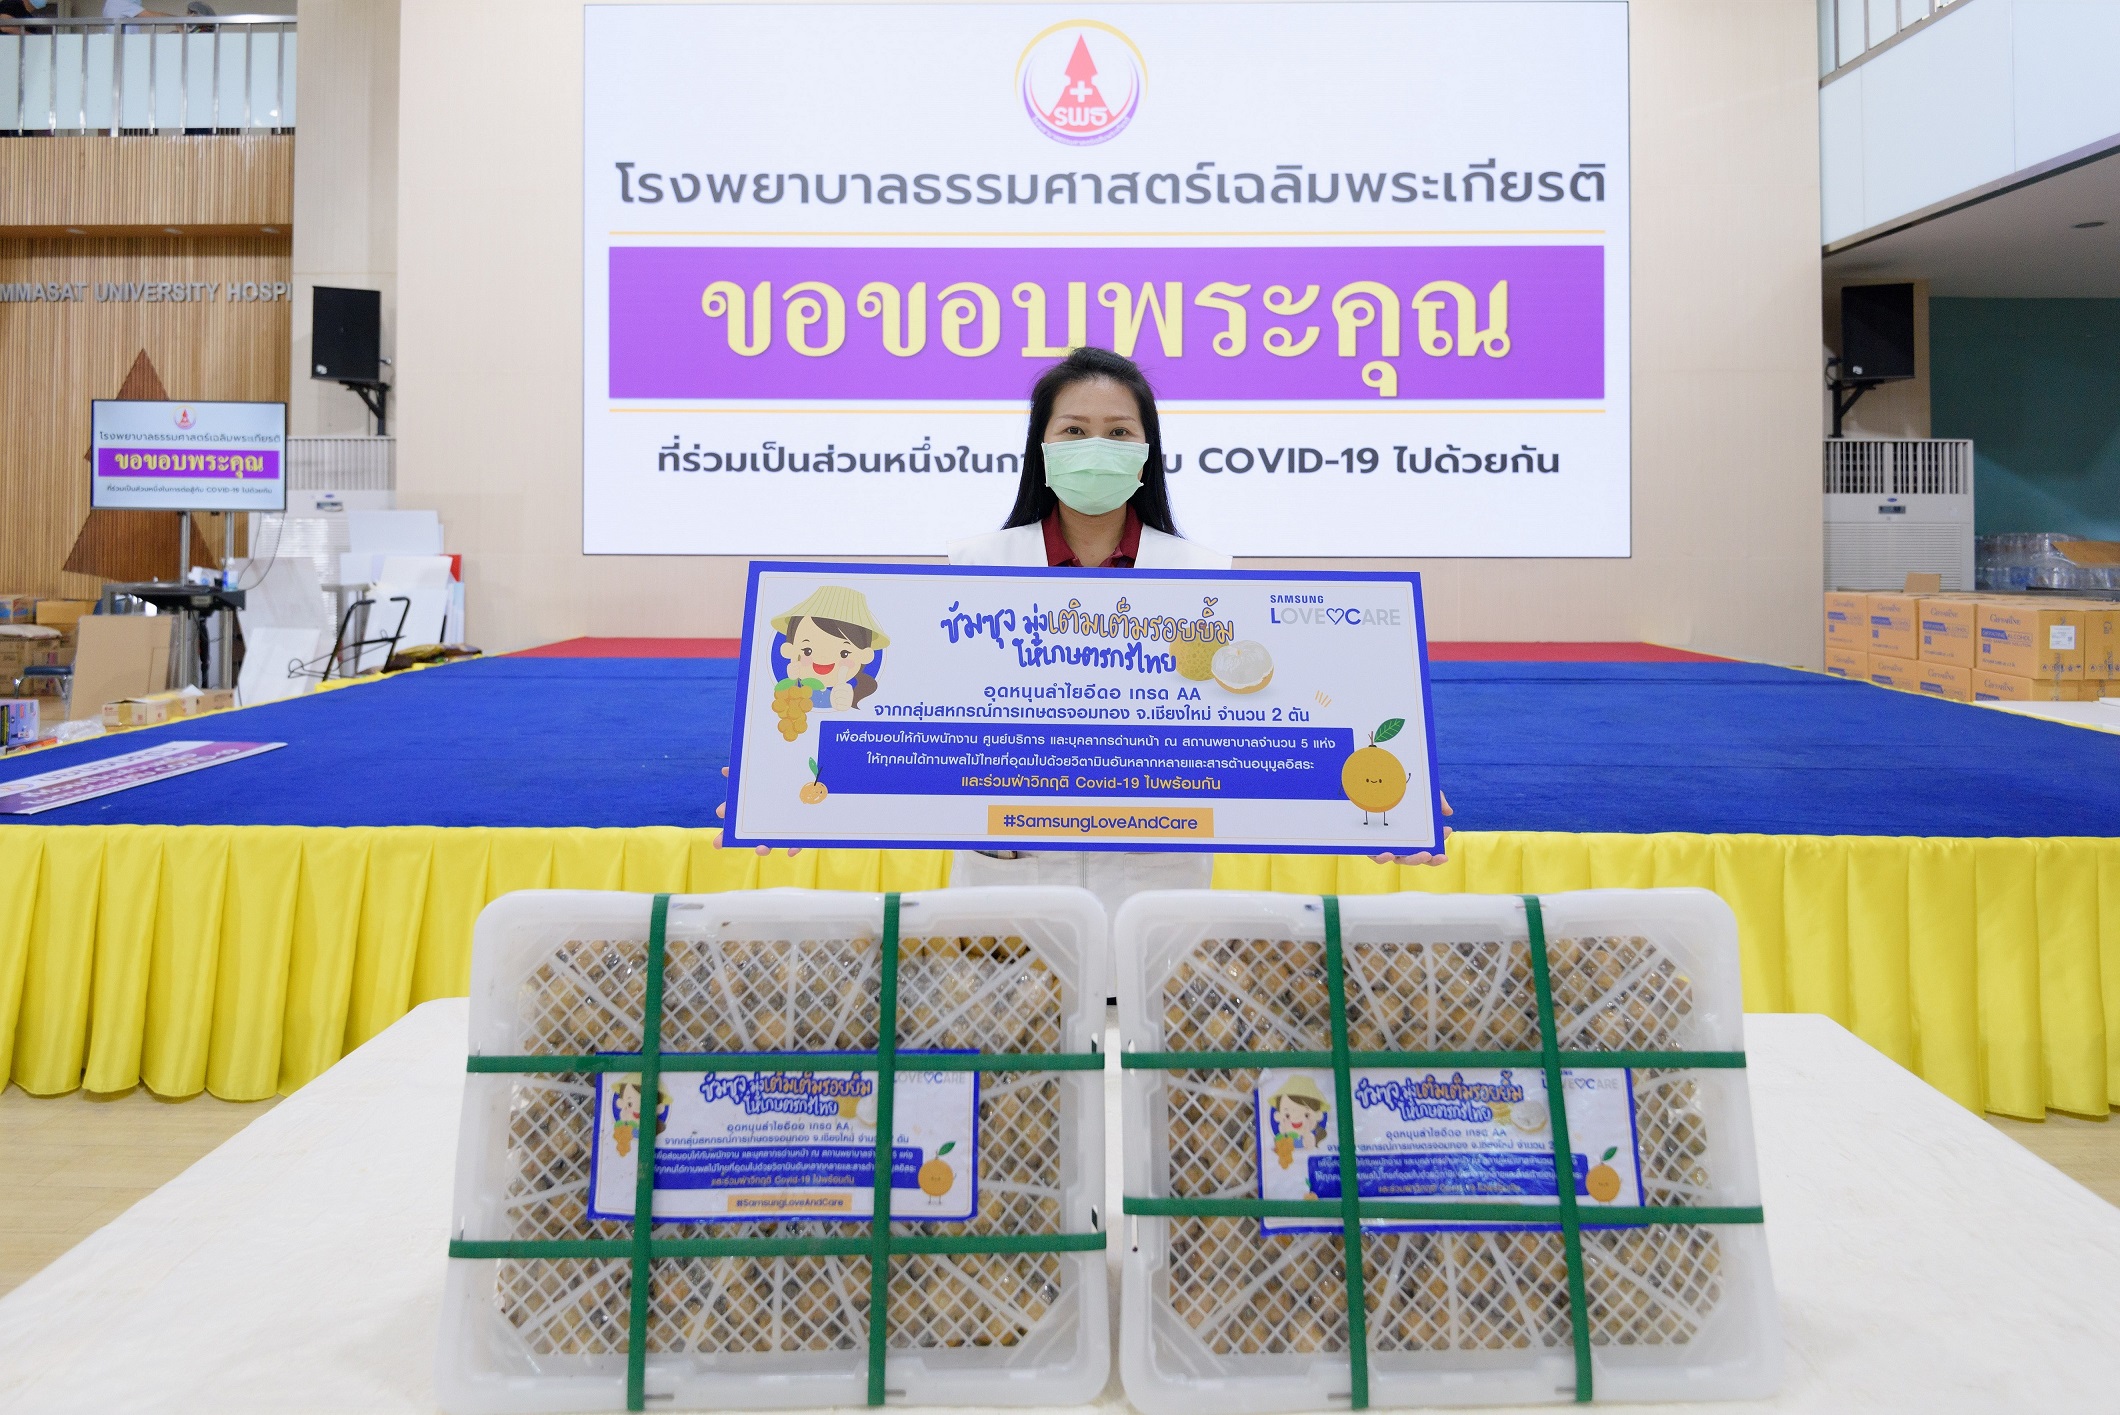 ซัมซุงมุ่งเติมเต็มรอยยิ้มให้เกษตรกรไทย จัดซื้อลำไยจำนวน 2 ตัน  พร้อมส่งมอบเพื่อเป็นกำลังใจให้กับบุคลากรด่านหน้า 5 สถานพยาบาล